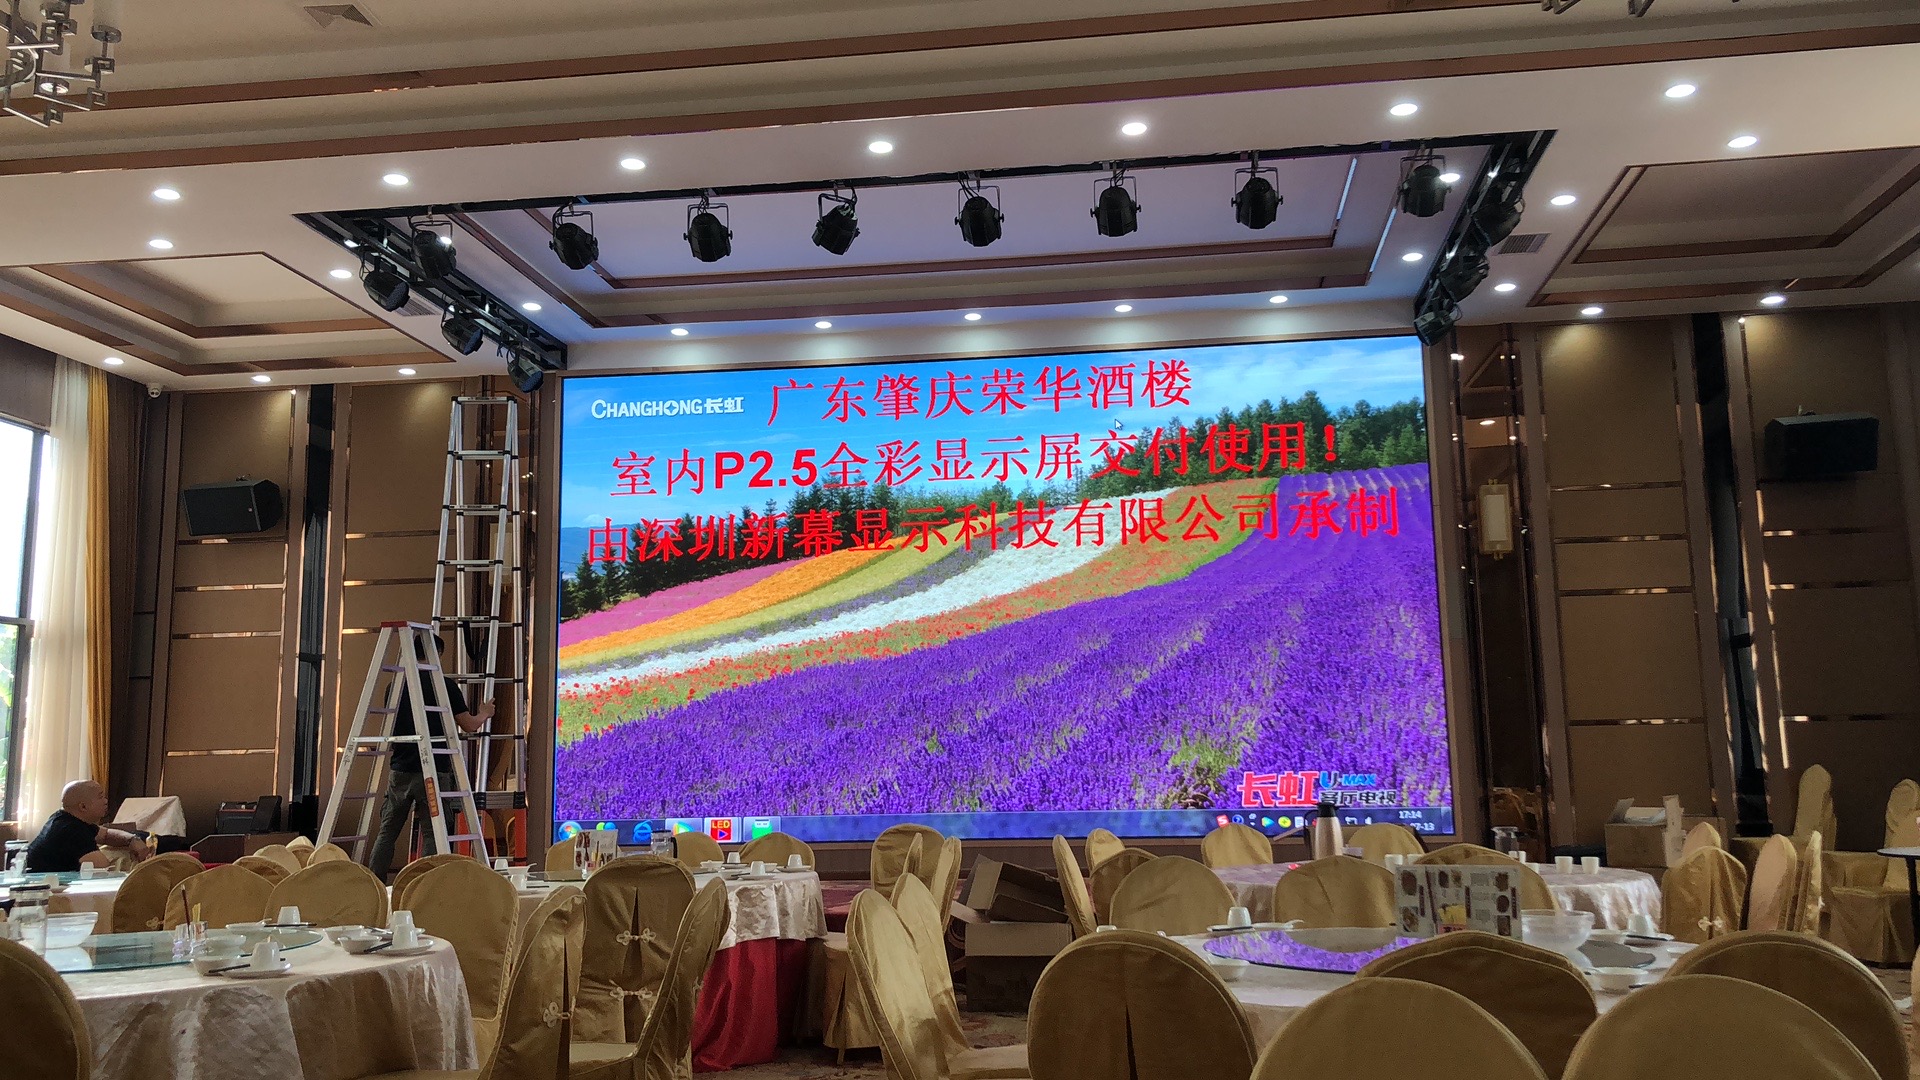 广东省肇庆市荣华酒楼大堂室内P2.5高清LED显示屏